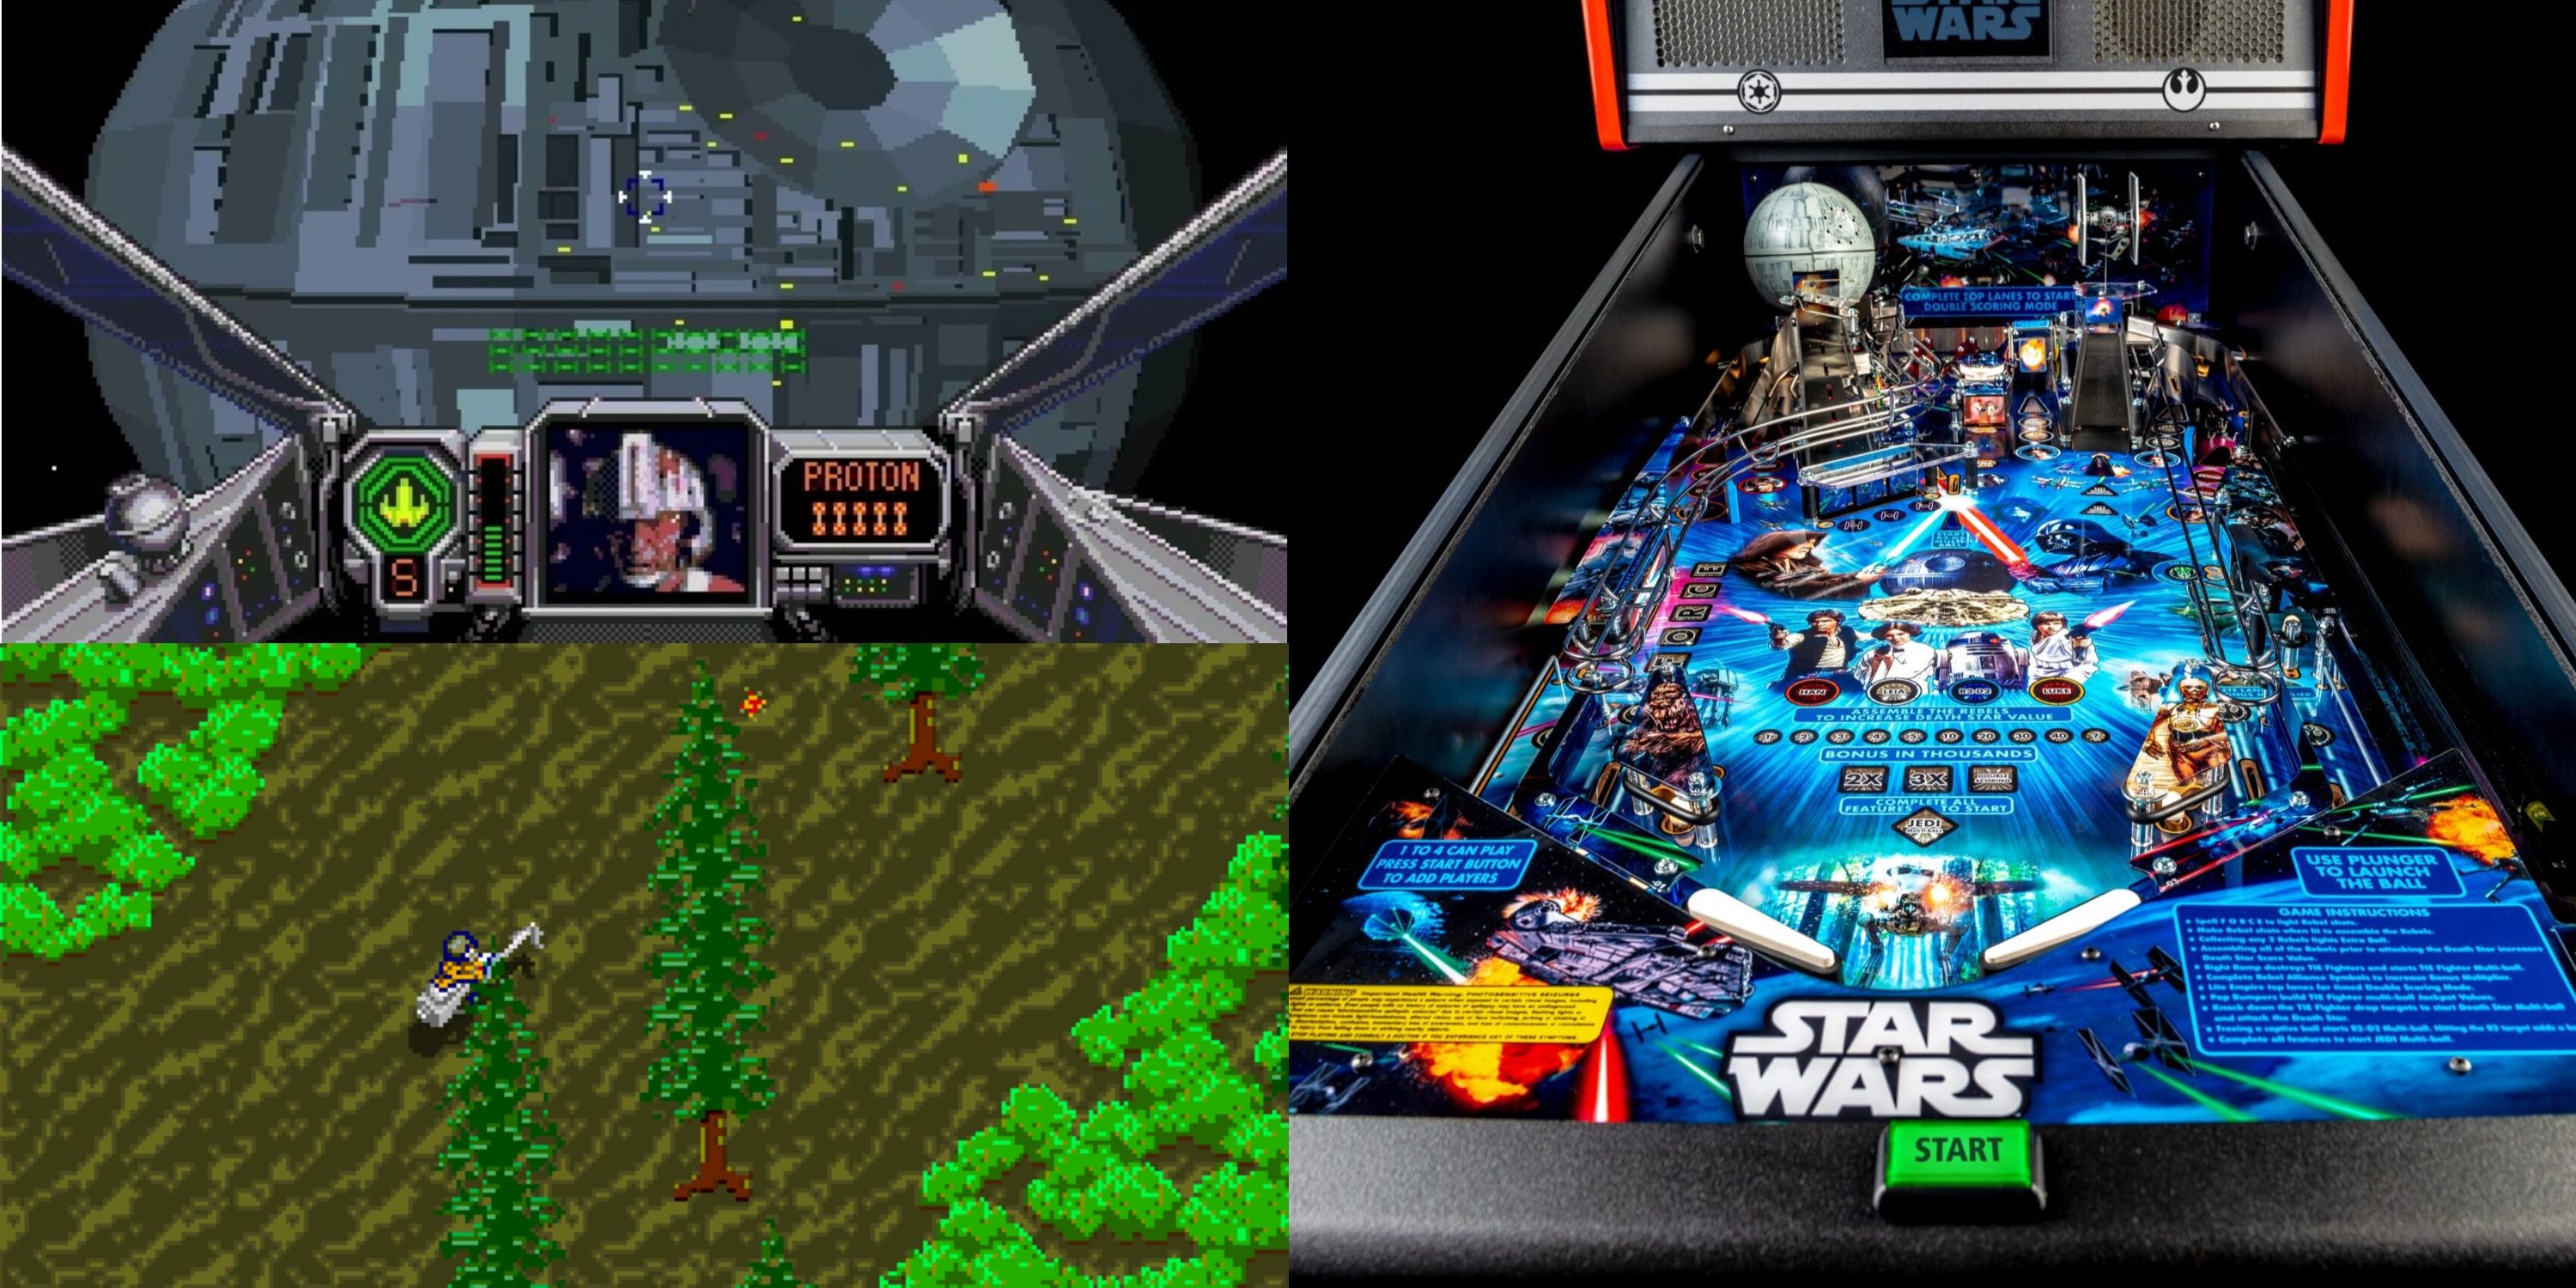 Star Wars arcade games 